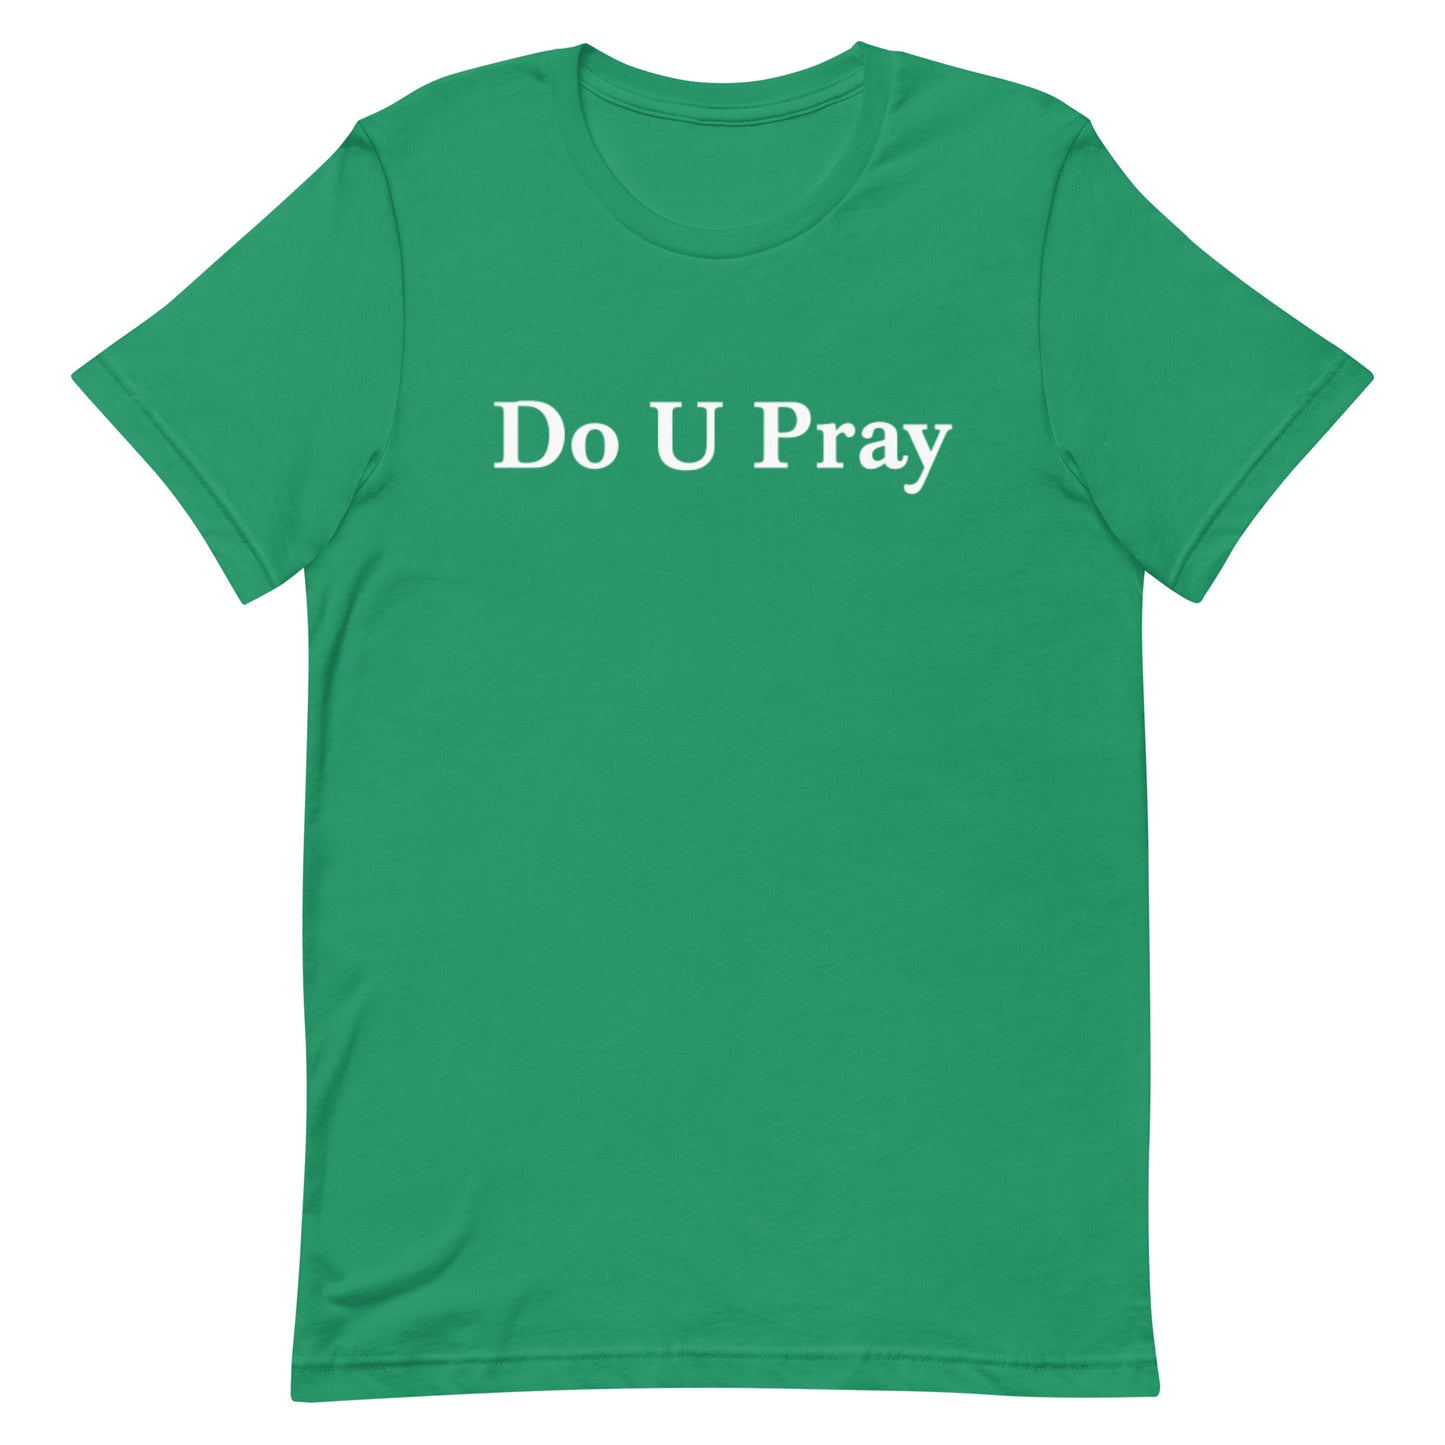 Do U Pray t-shirt